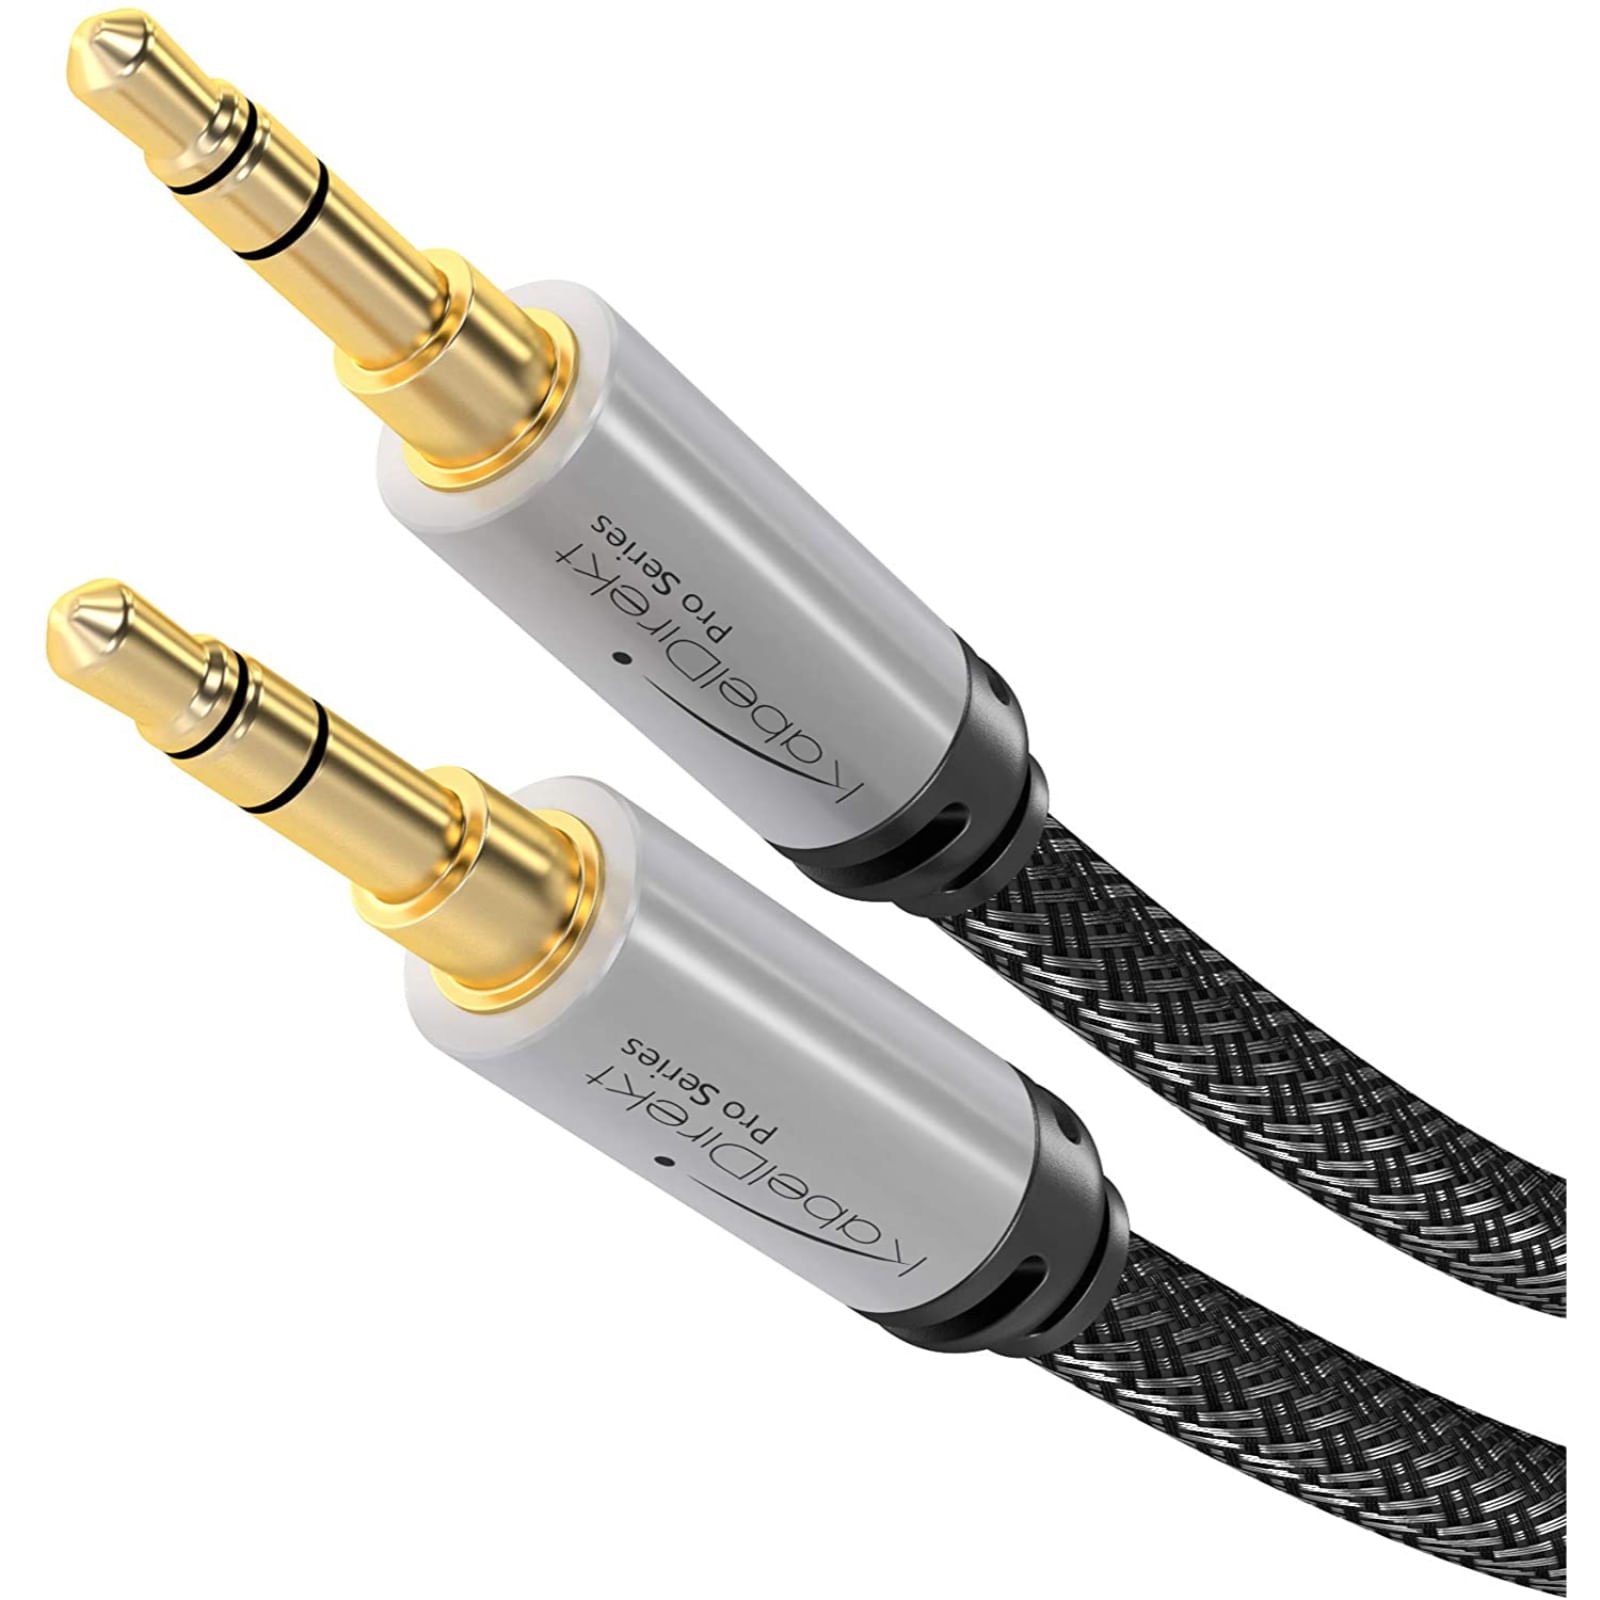 Cable Auxiliar Audio Jack 3.5mm Macho Schubert 1mt